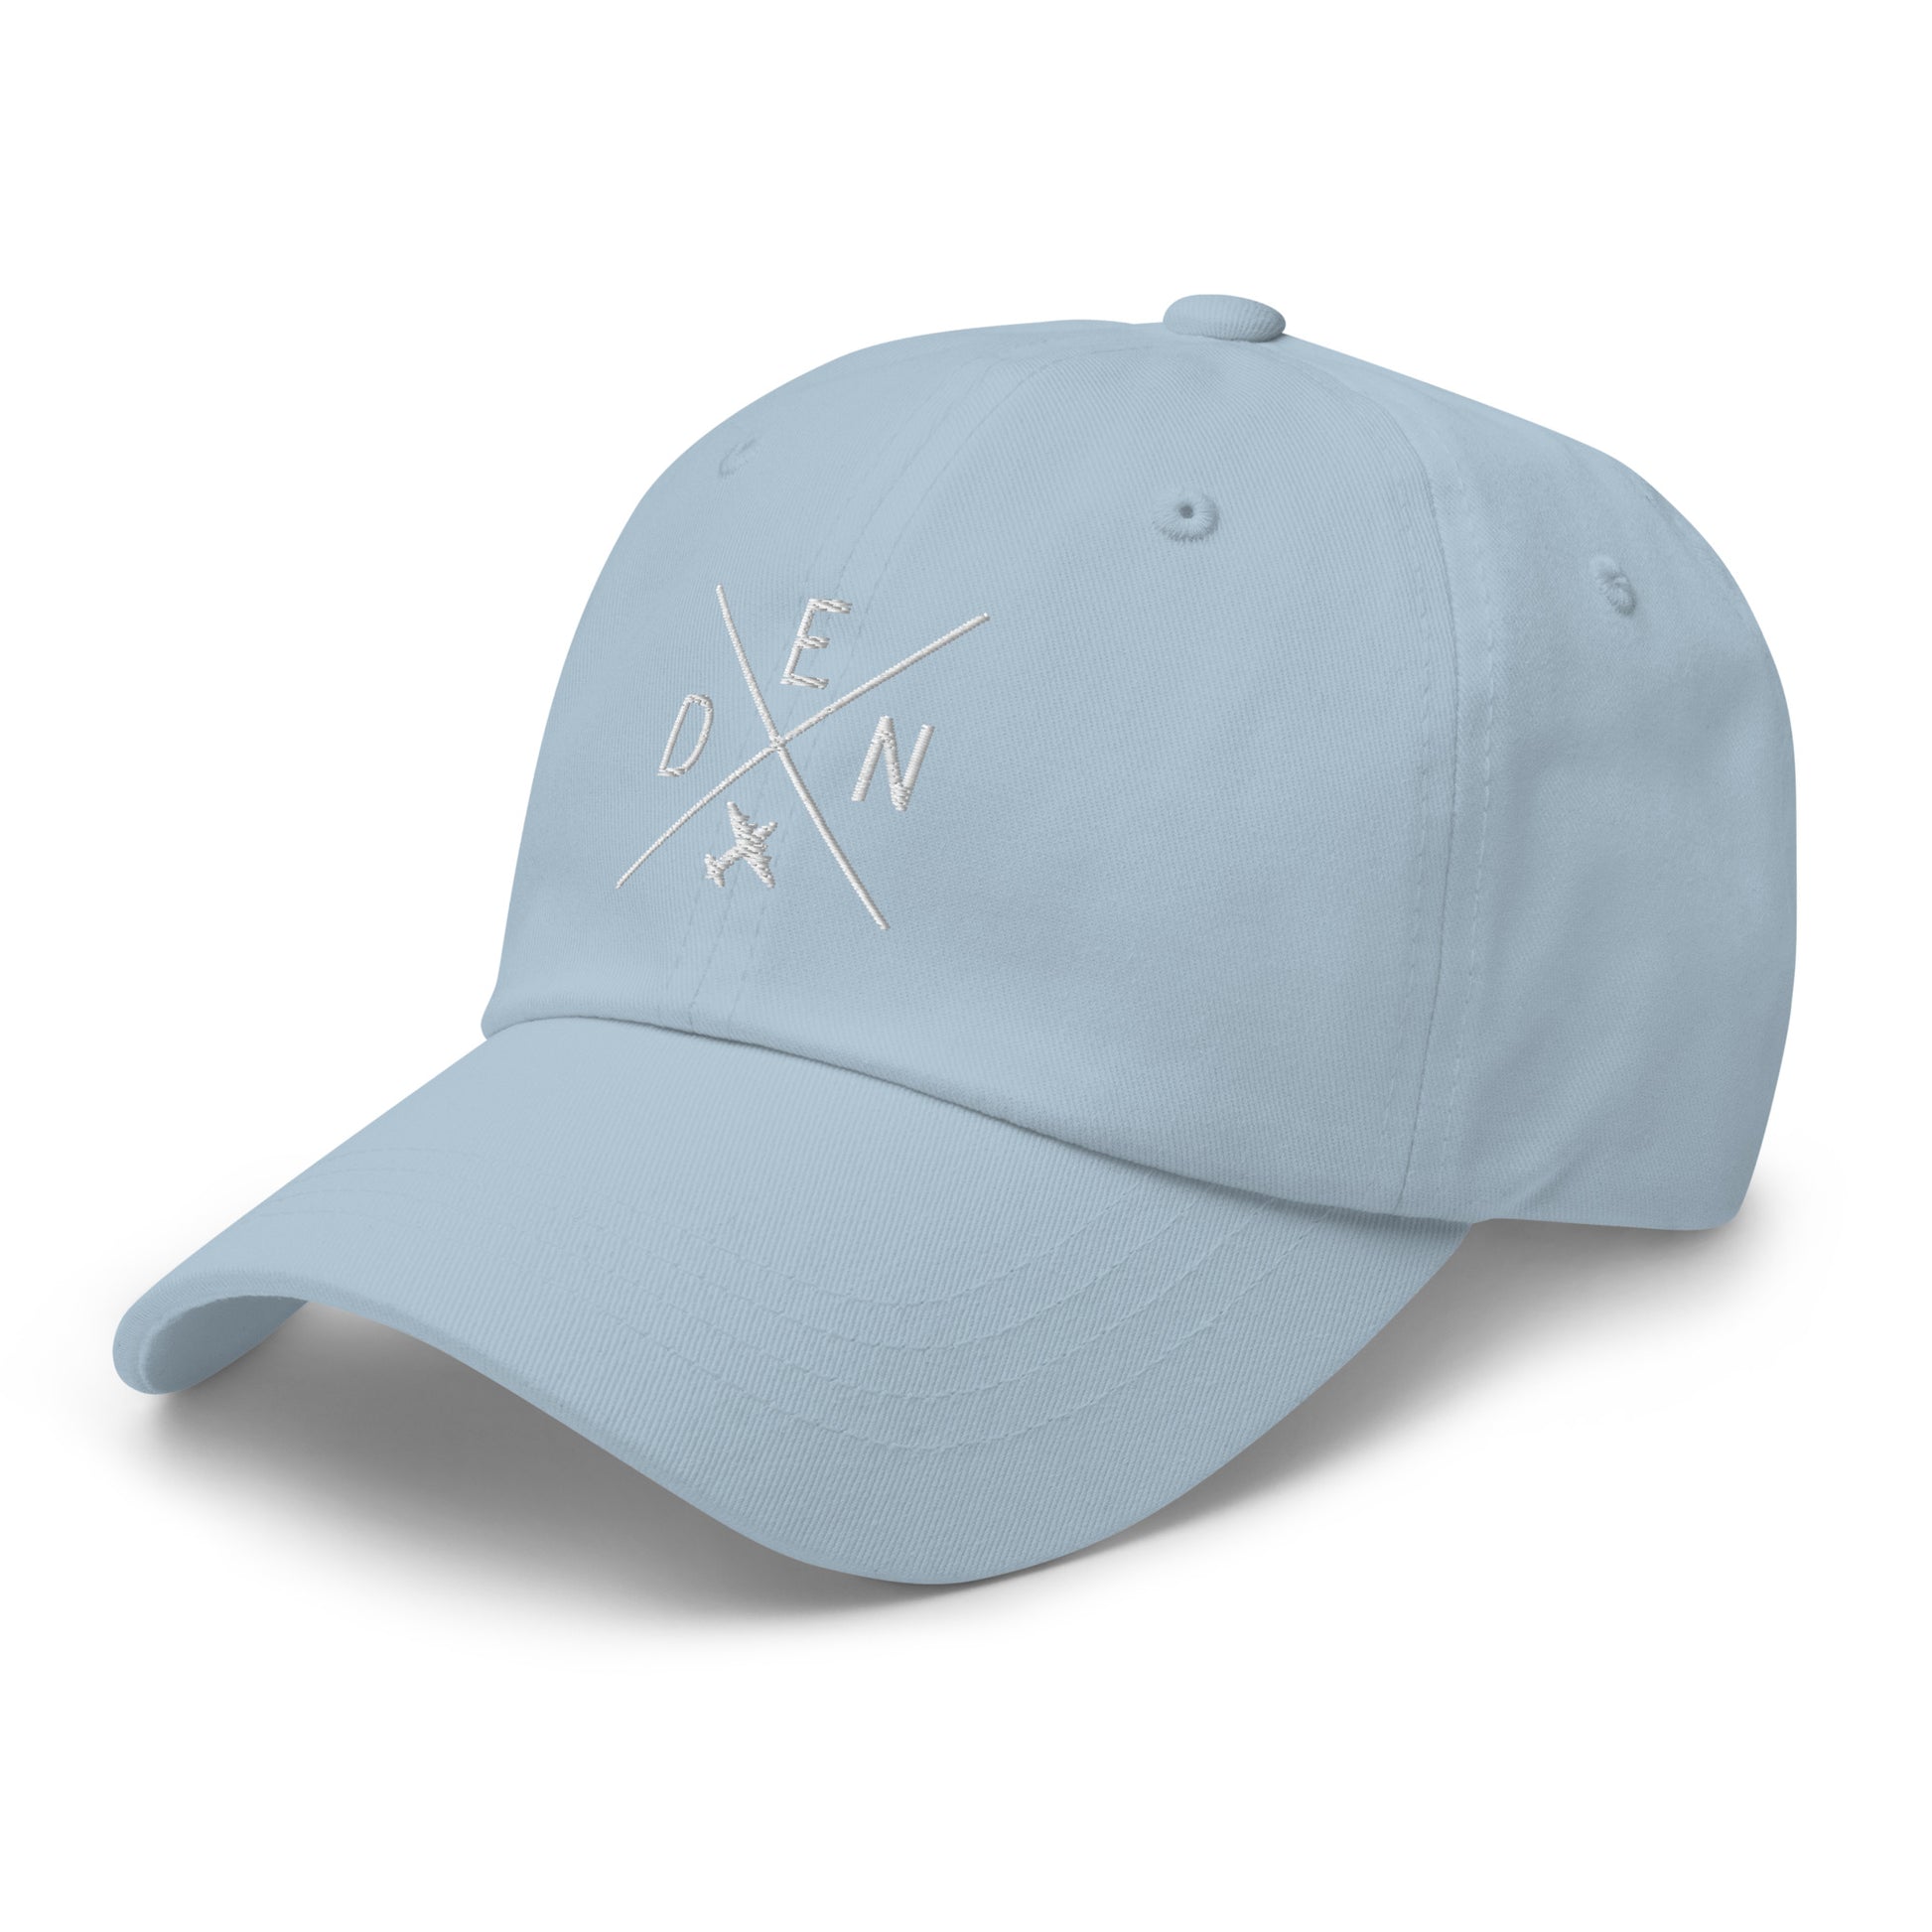 Crossed-X Dad Hat - White • DEN Denver • YHM Designs - Image 30